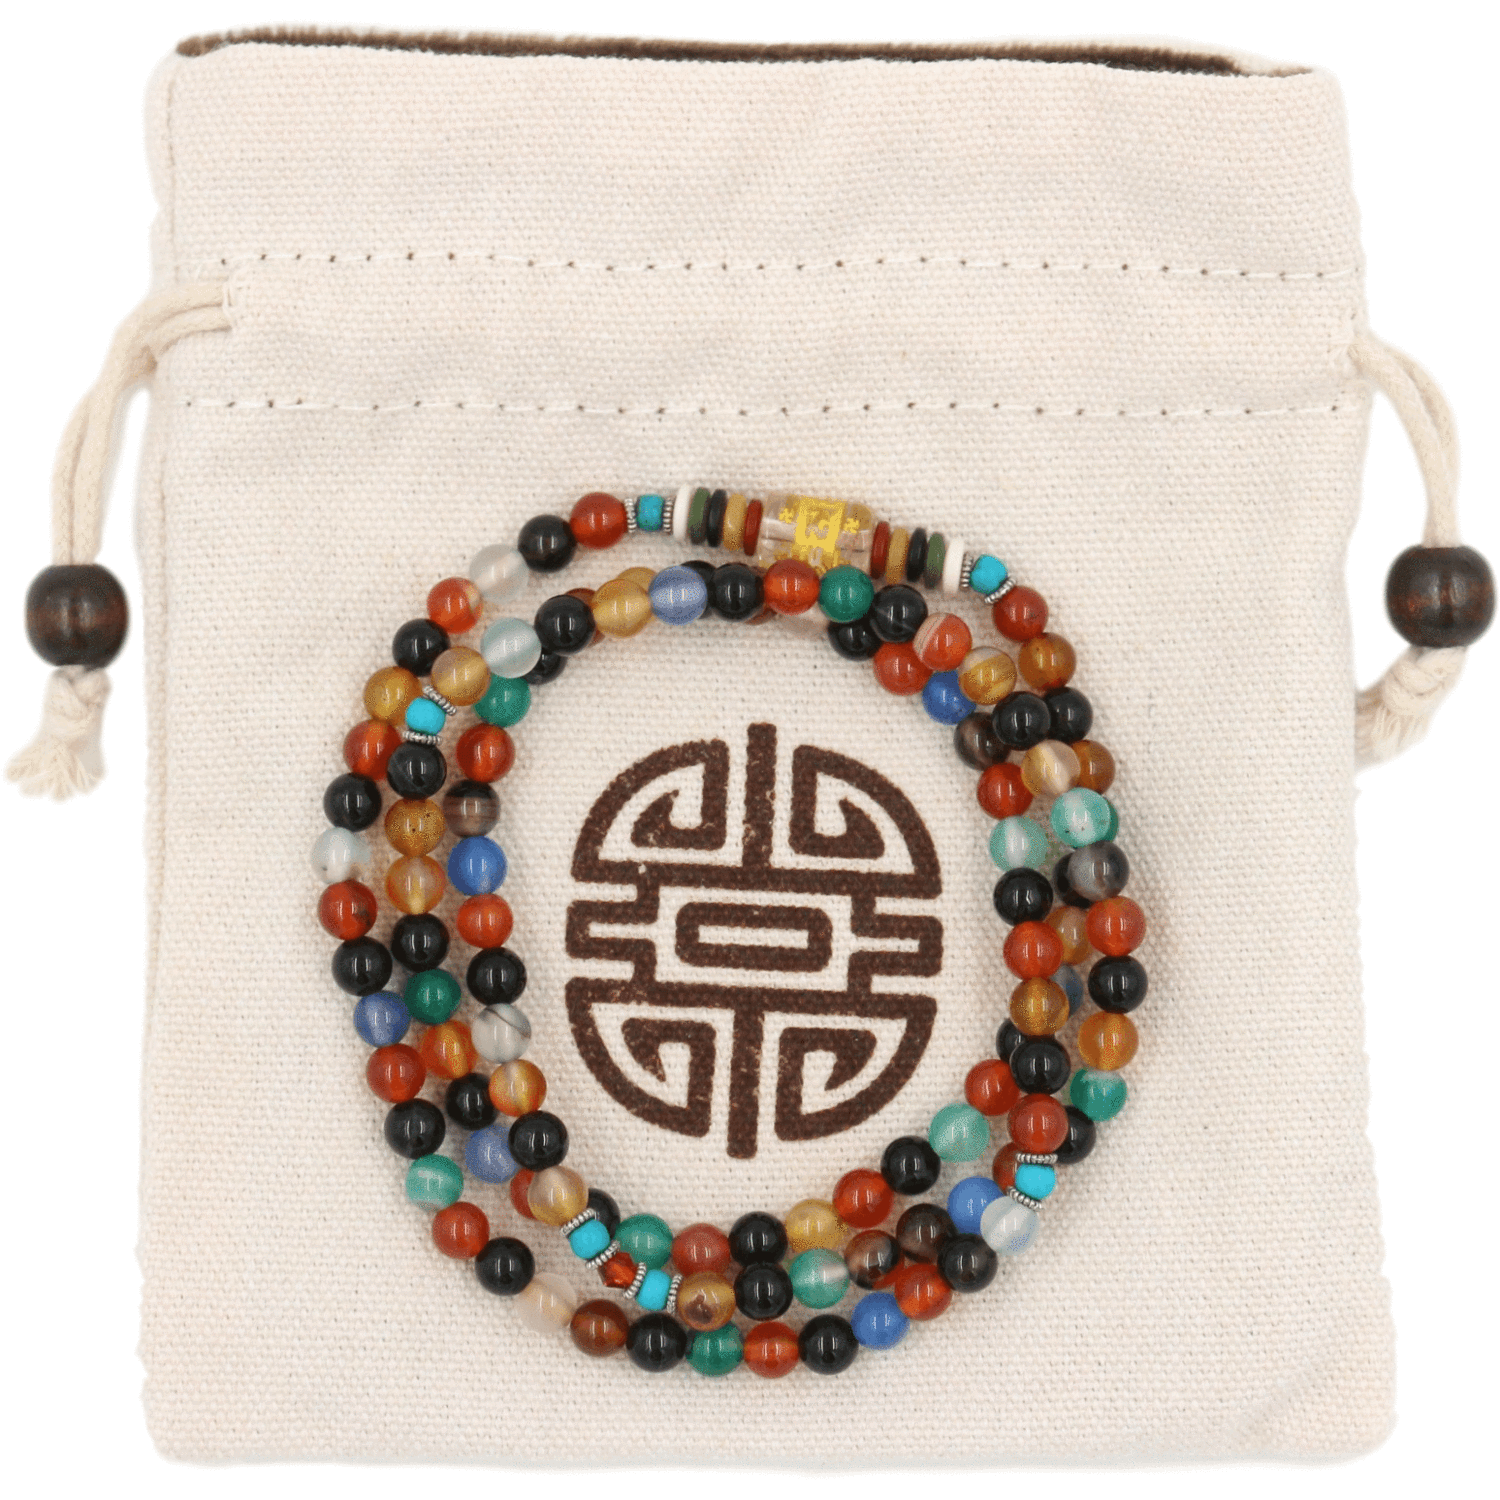 Mala Buddhiste artisanal – 108 beads of grenat